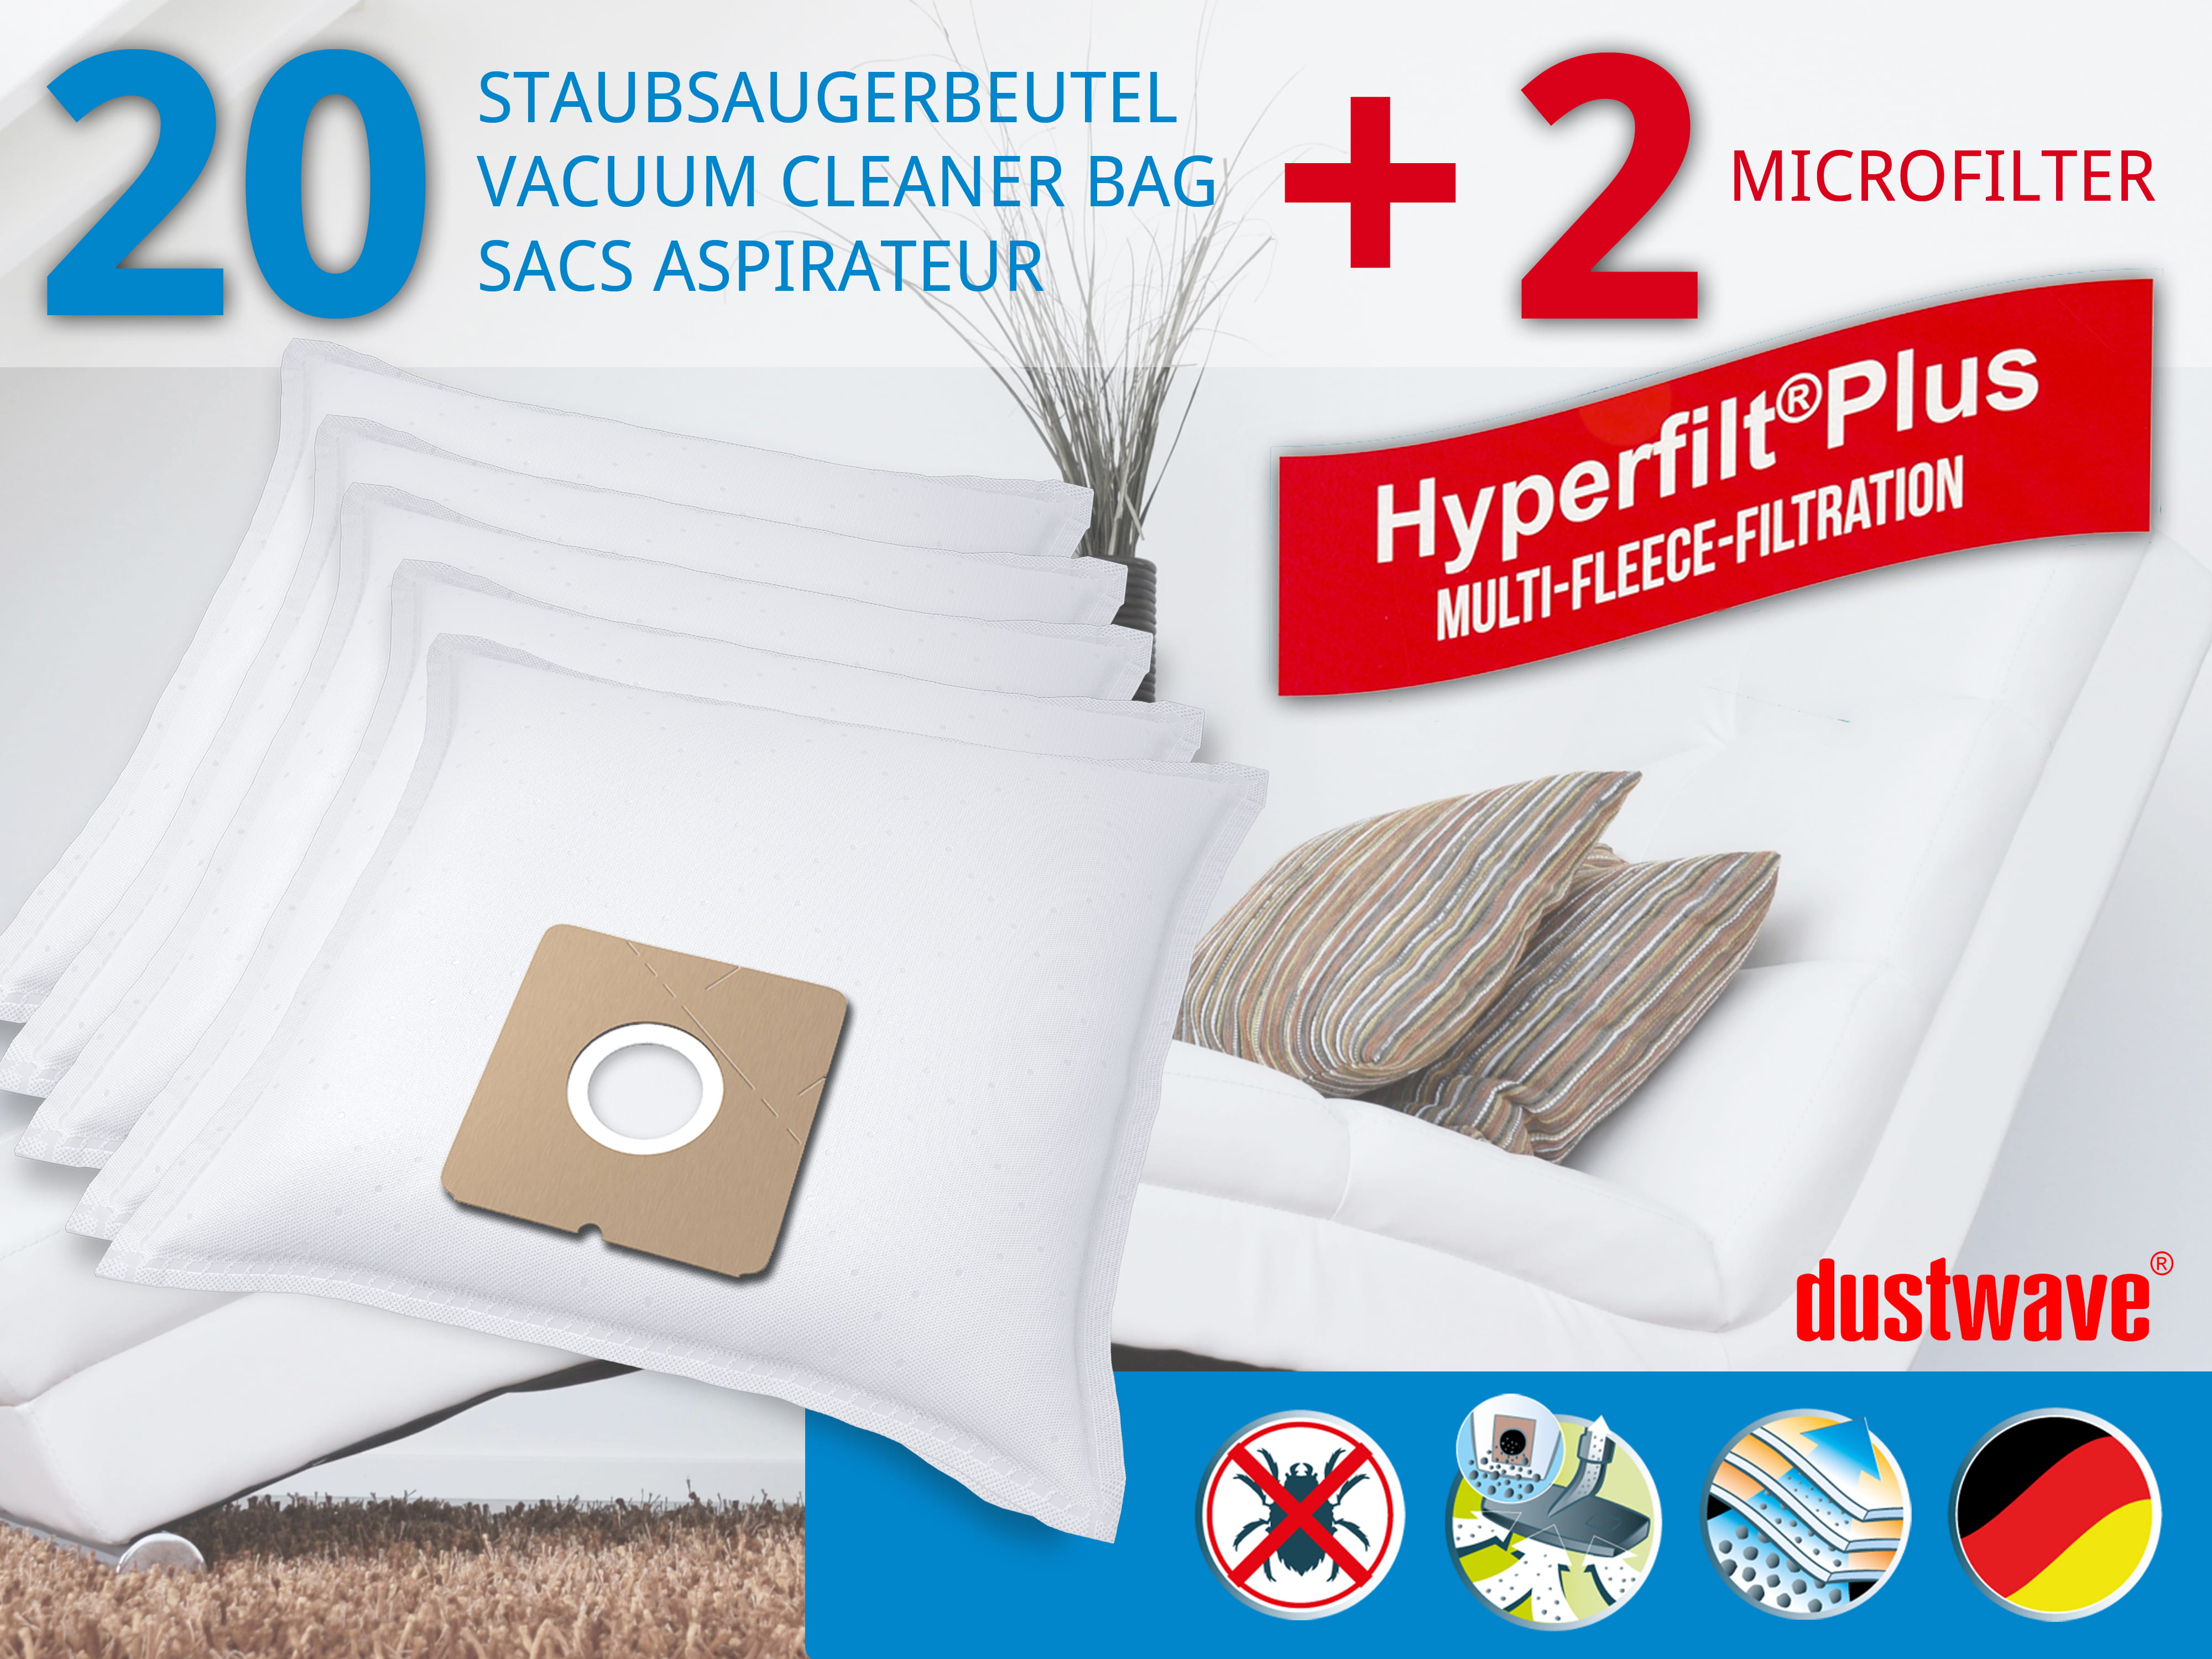 Dustwave® 20 Staubsaugerbeutel für SWIRL Y 98 - hocheffizient, mehrlagiges Mikrovlies mit Hygieneverschluss - Made in Germany